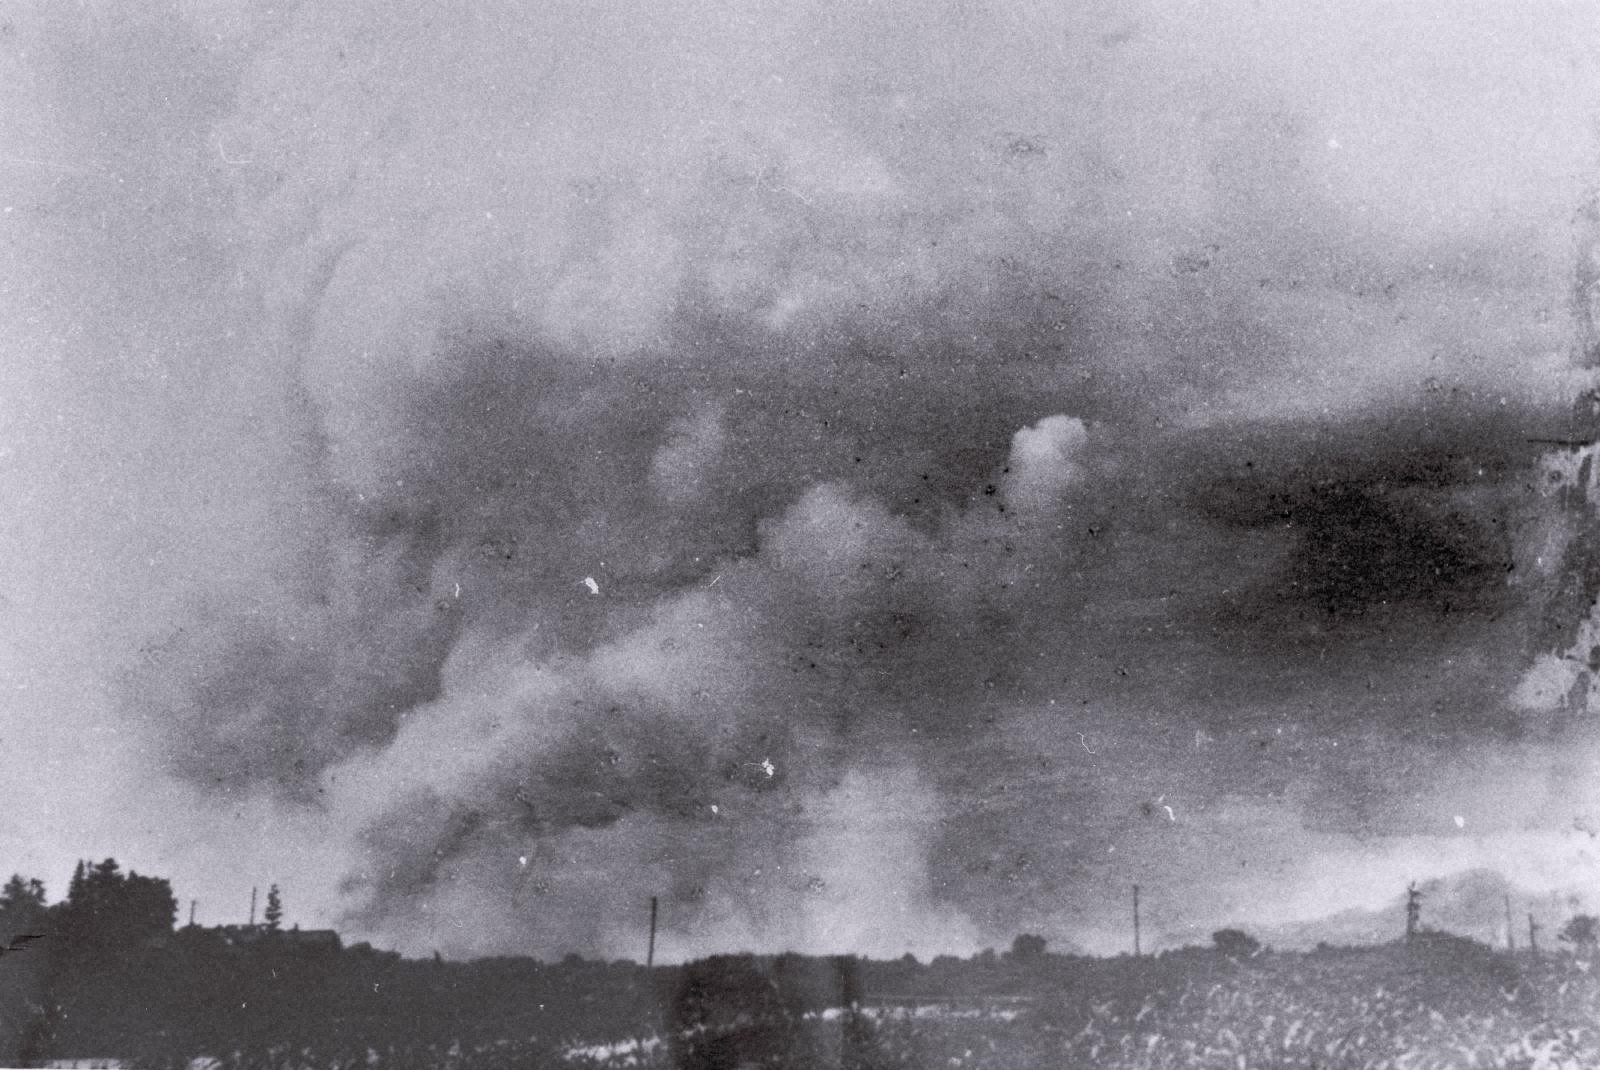 The firestorm at Hiroshima